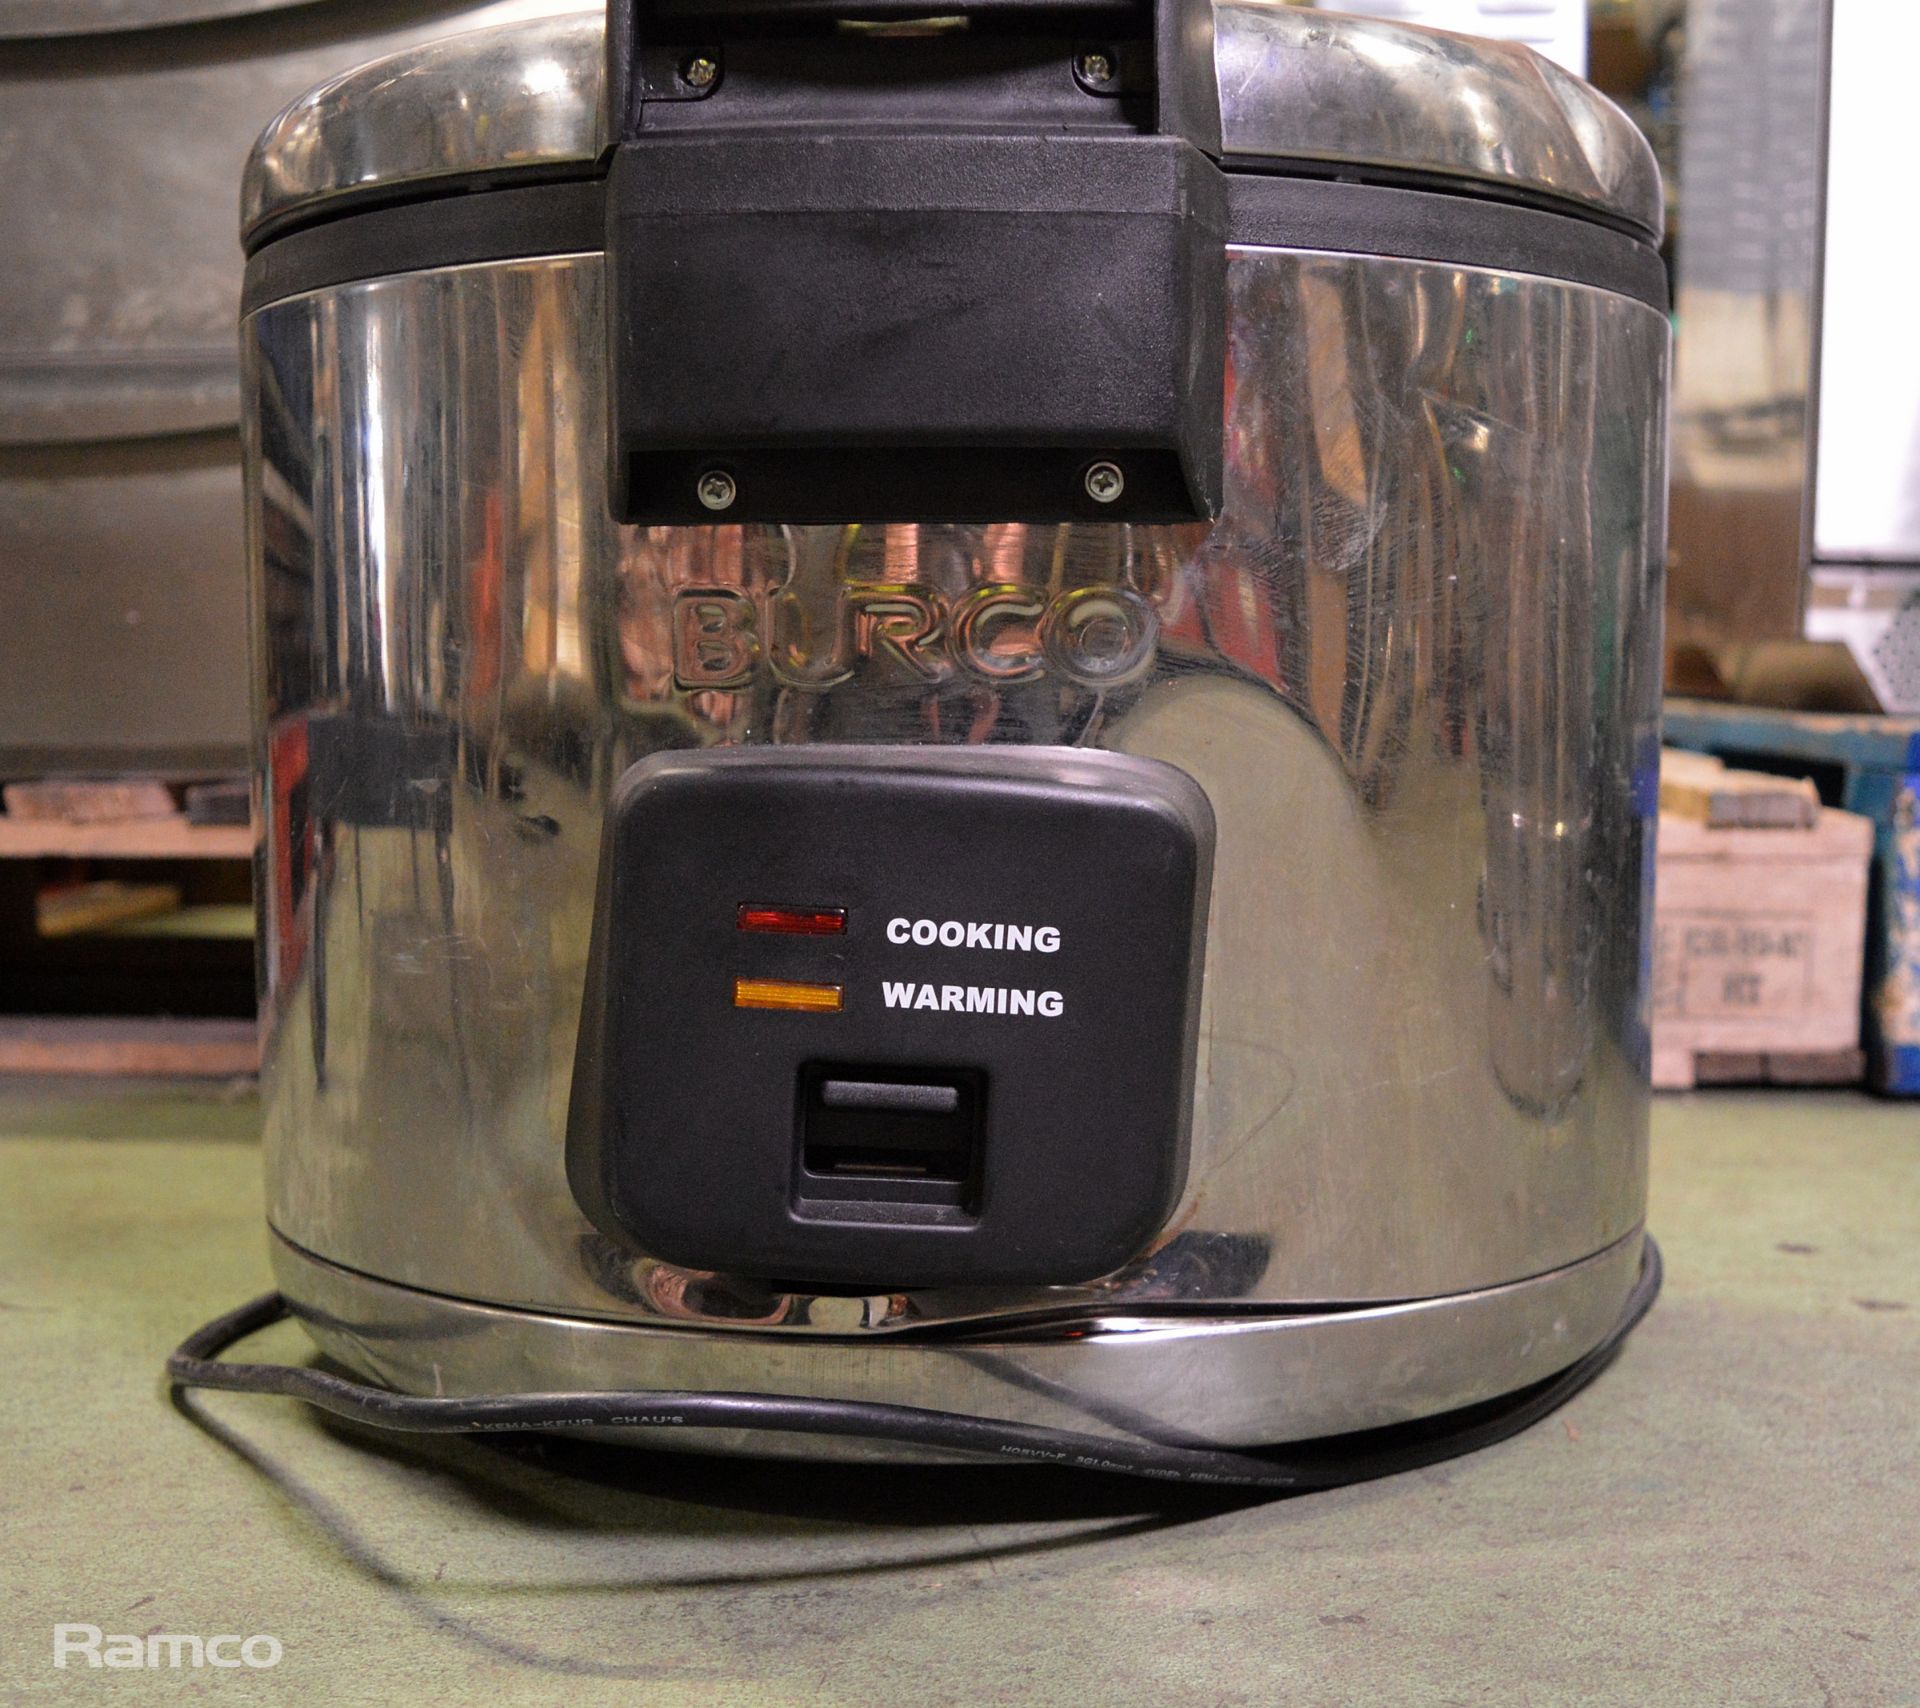 Burgo 77000 240V Pressure Cooker - Image 4 of 4